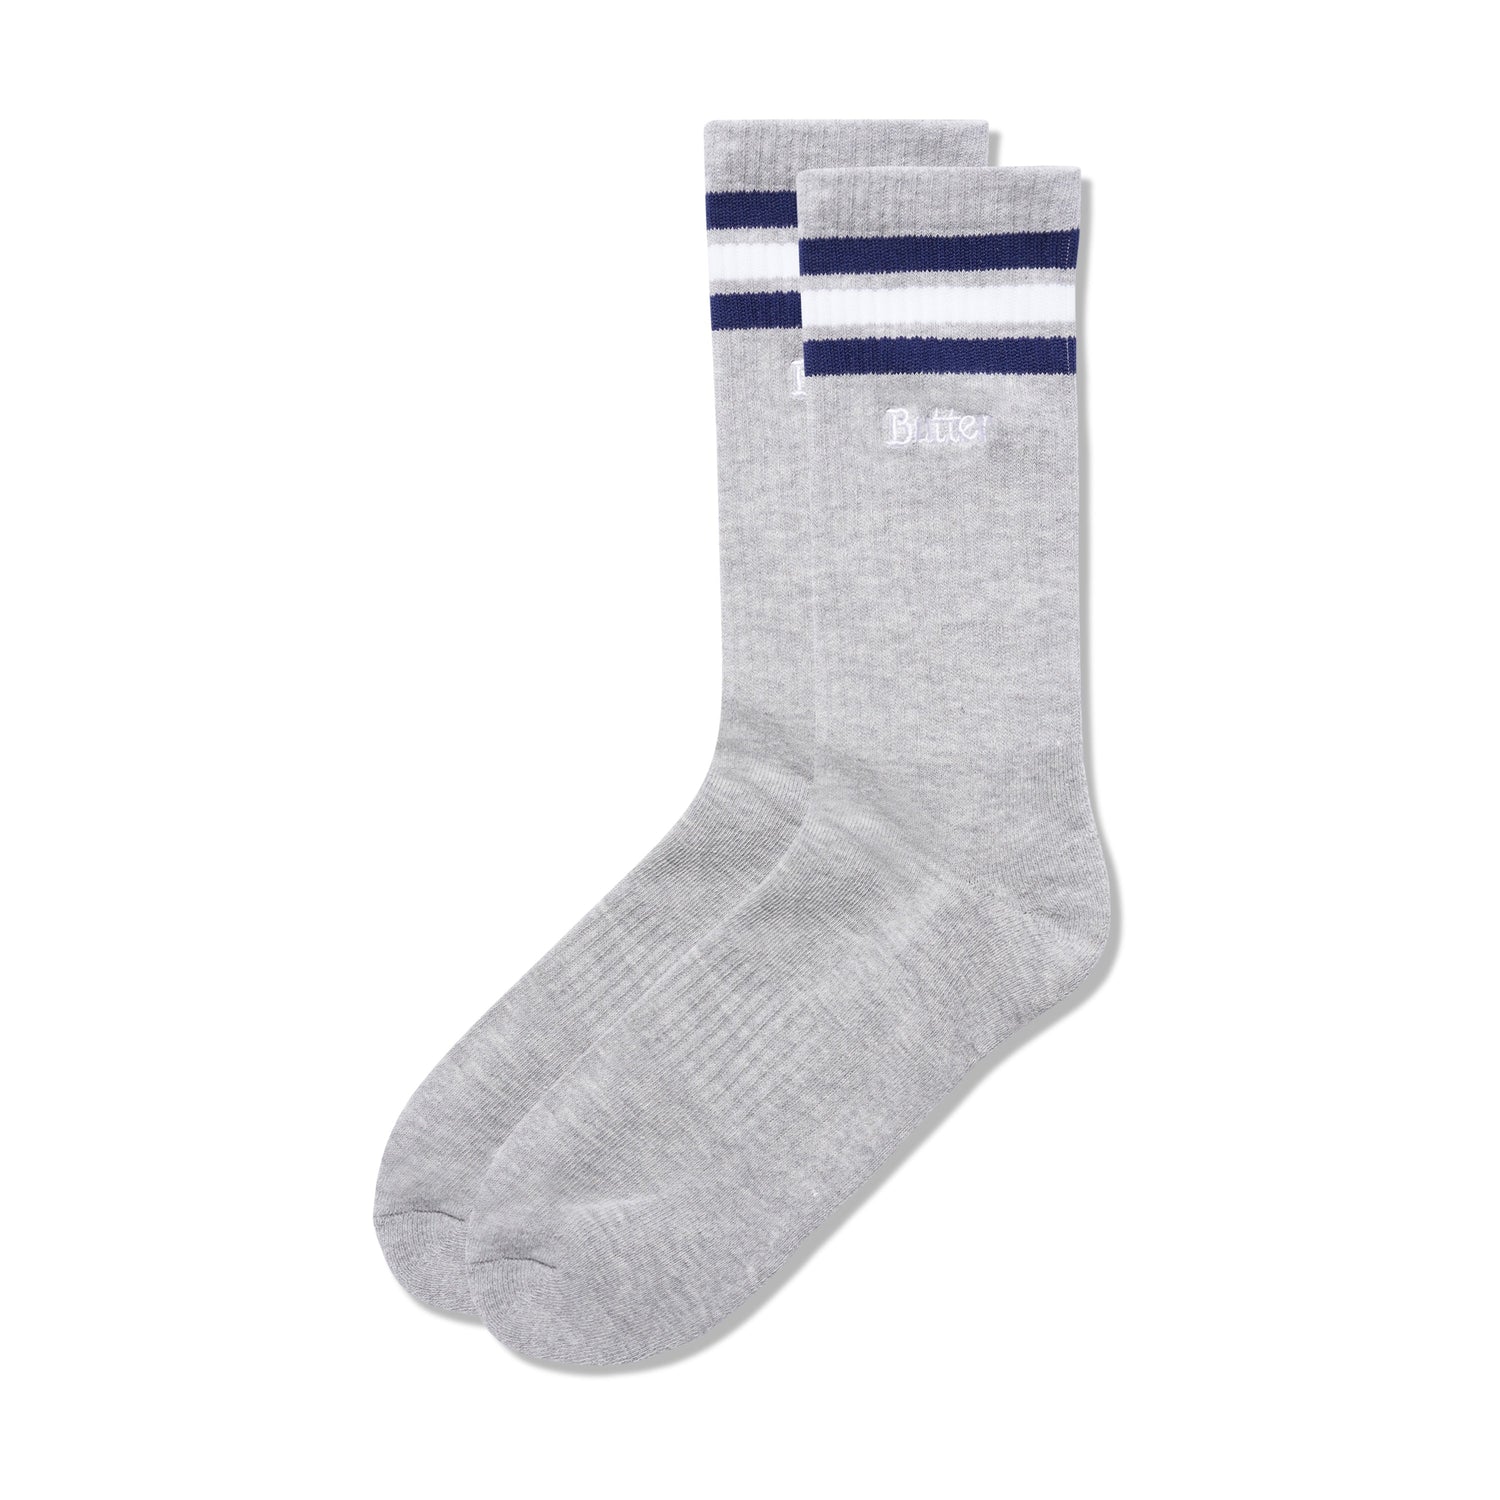 Stripe Socks, Ash Grey